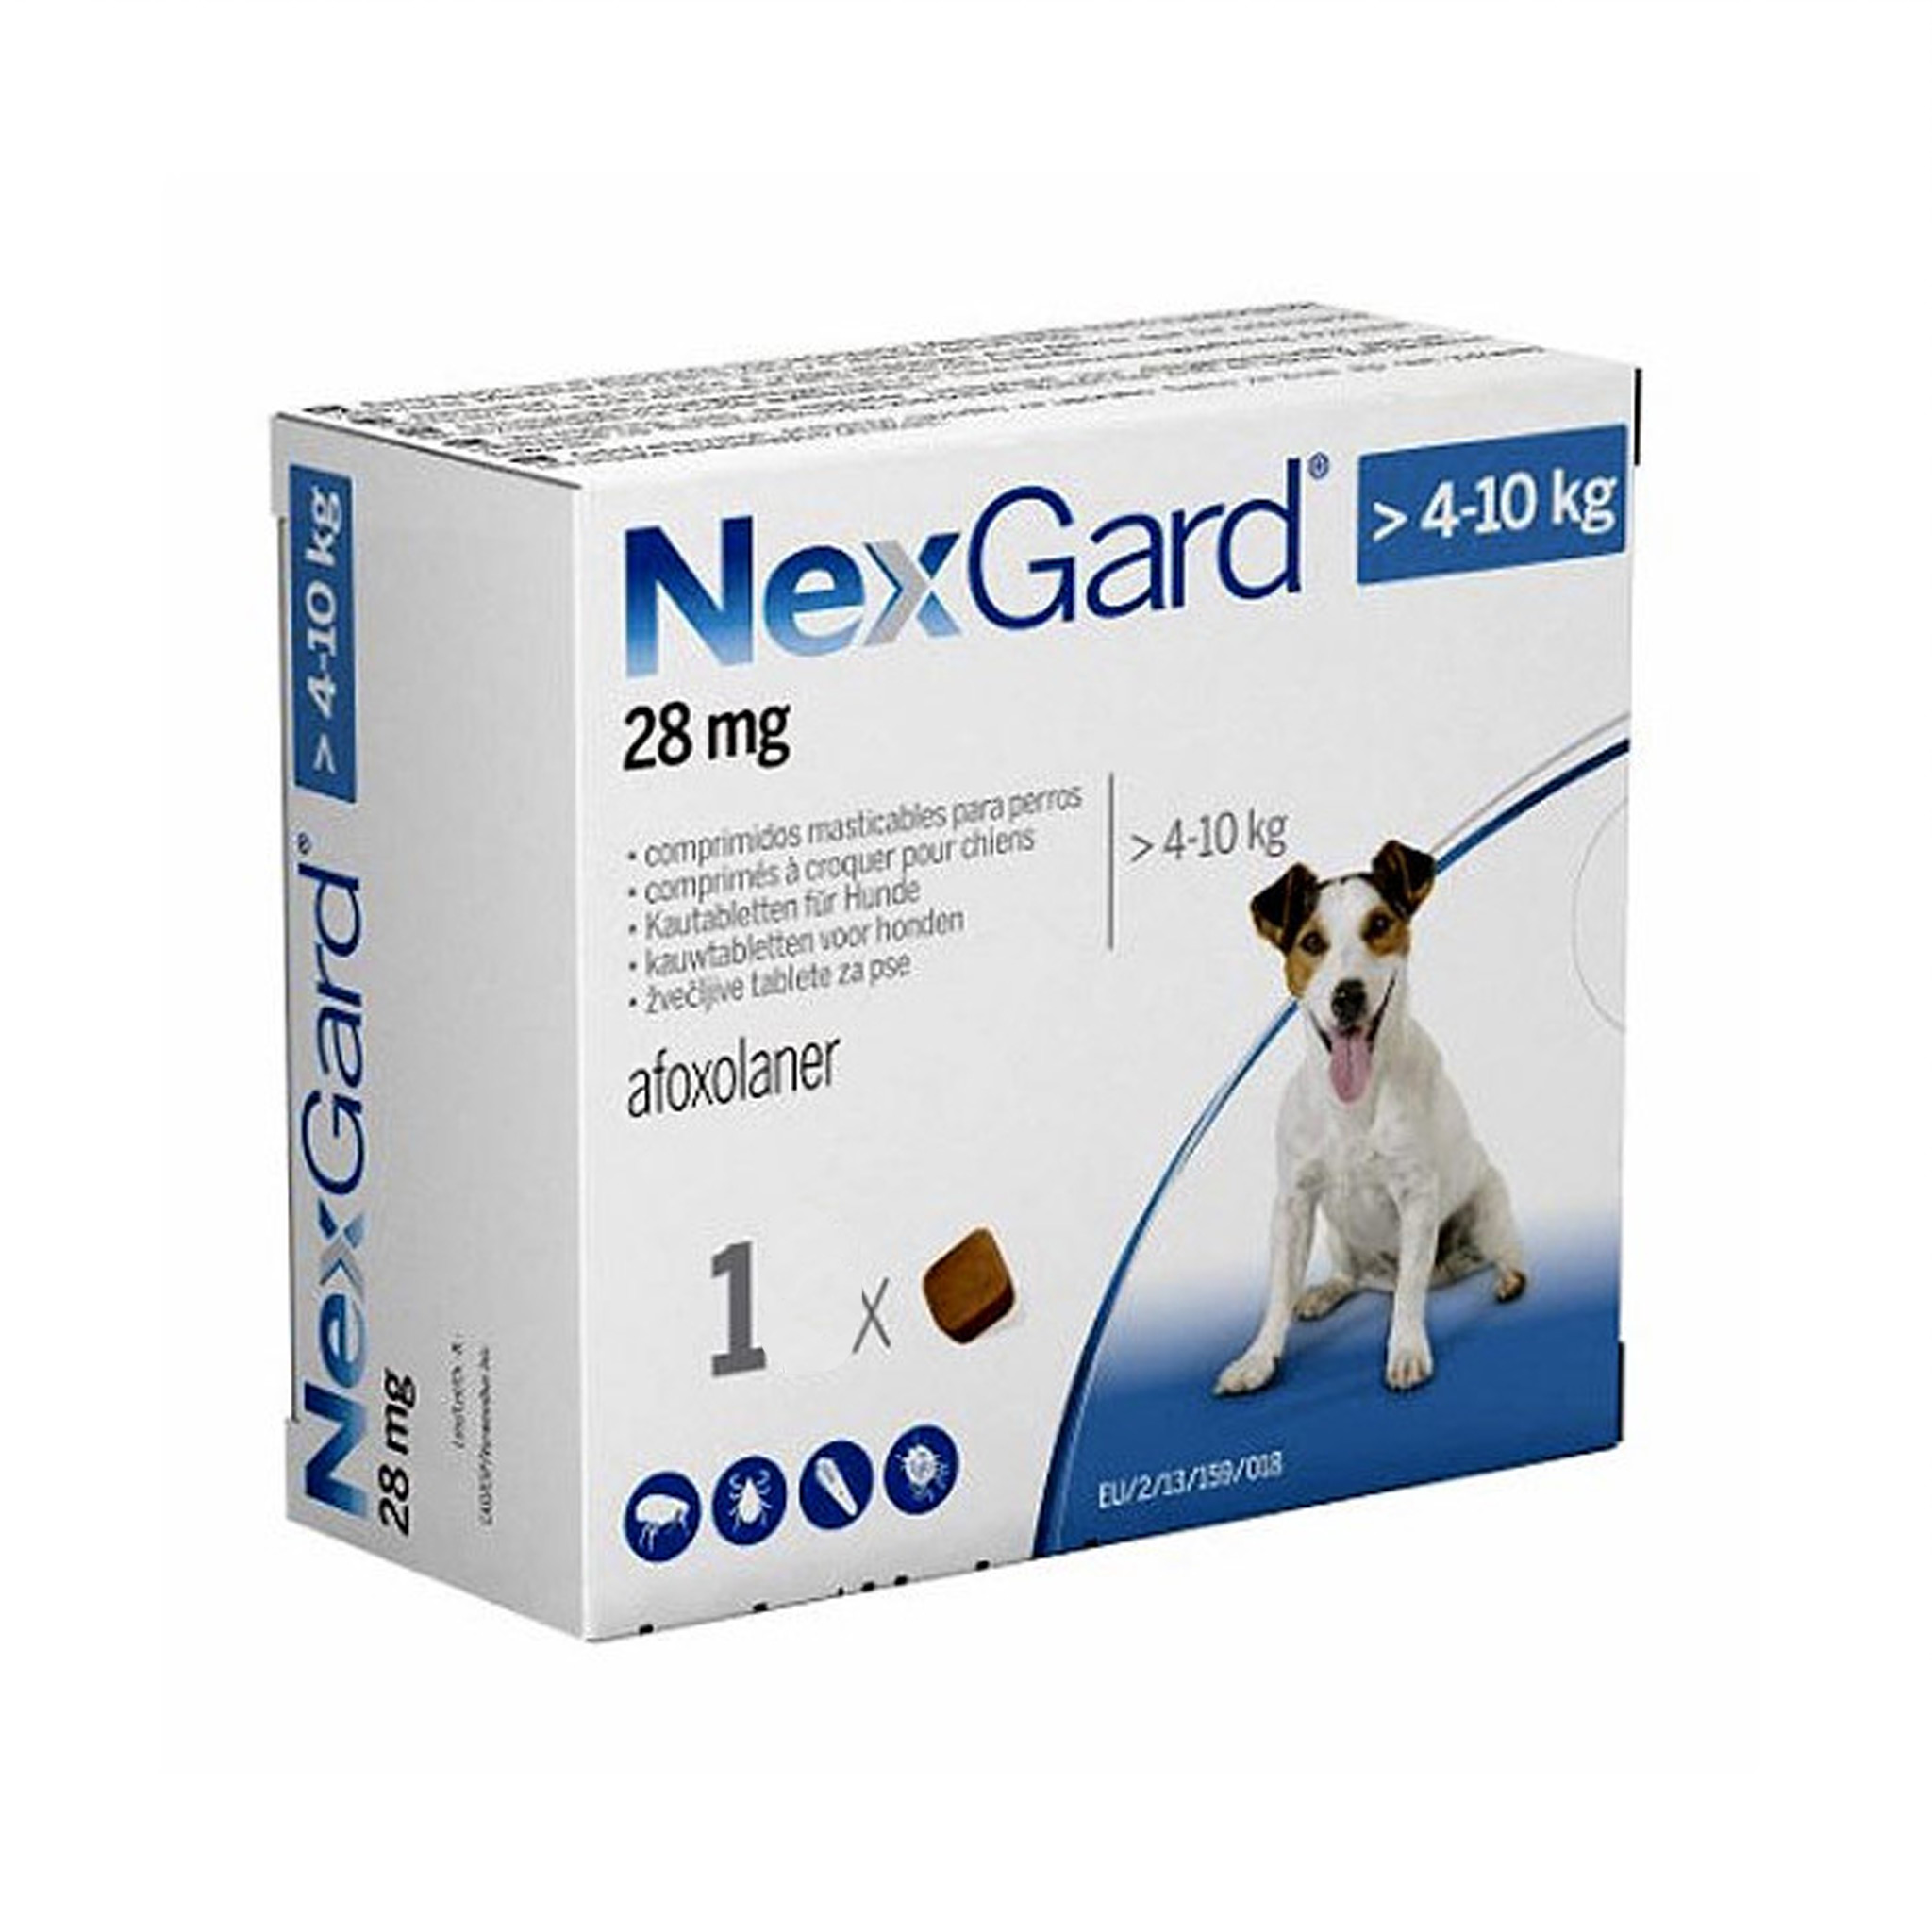 Нексгард для собак до 10 кг. NEXGARD M. NEXGARD Spectra для собак 3 компонентная 1 большая и 2 маленькие. НЕКСГАРД для кошек. NEXGARD Spectra funciona Италия.